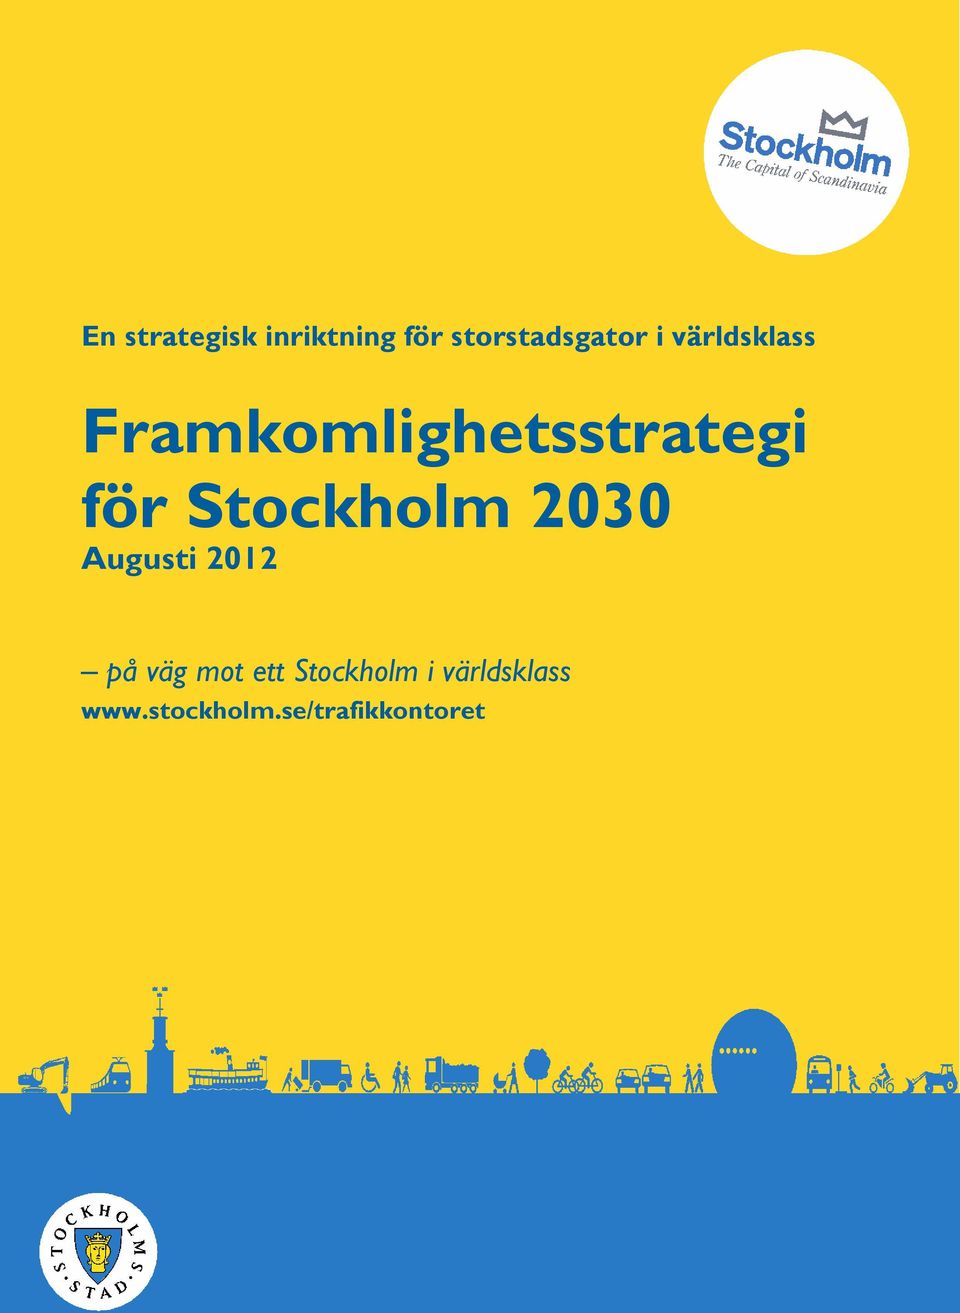 Stockholm 2030 Augusti 2012 på väg mot ett